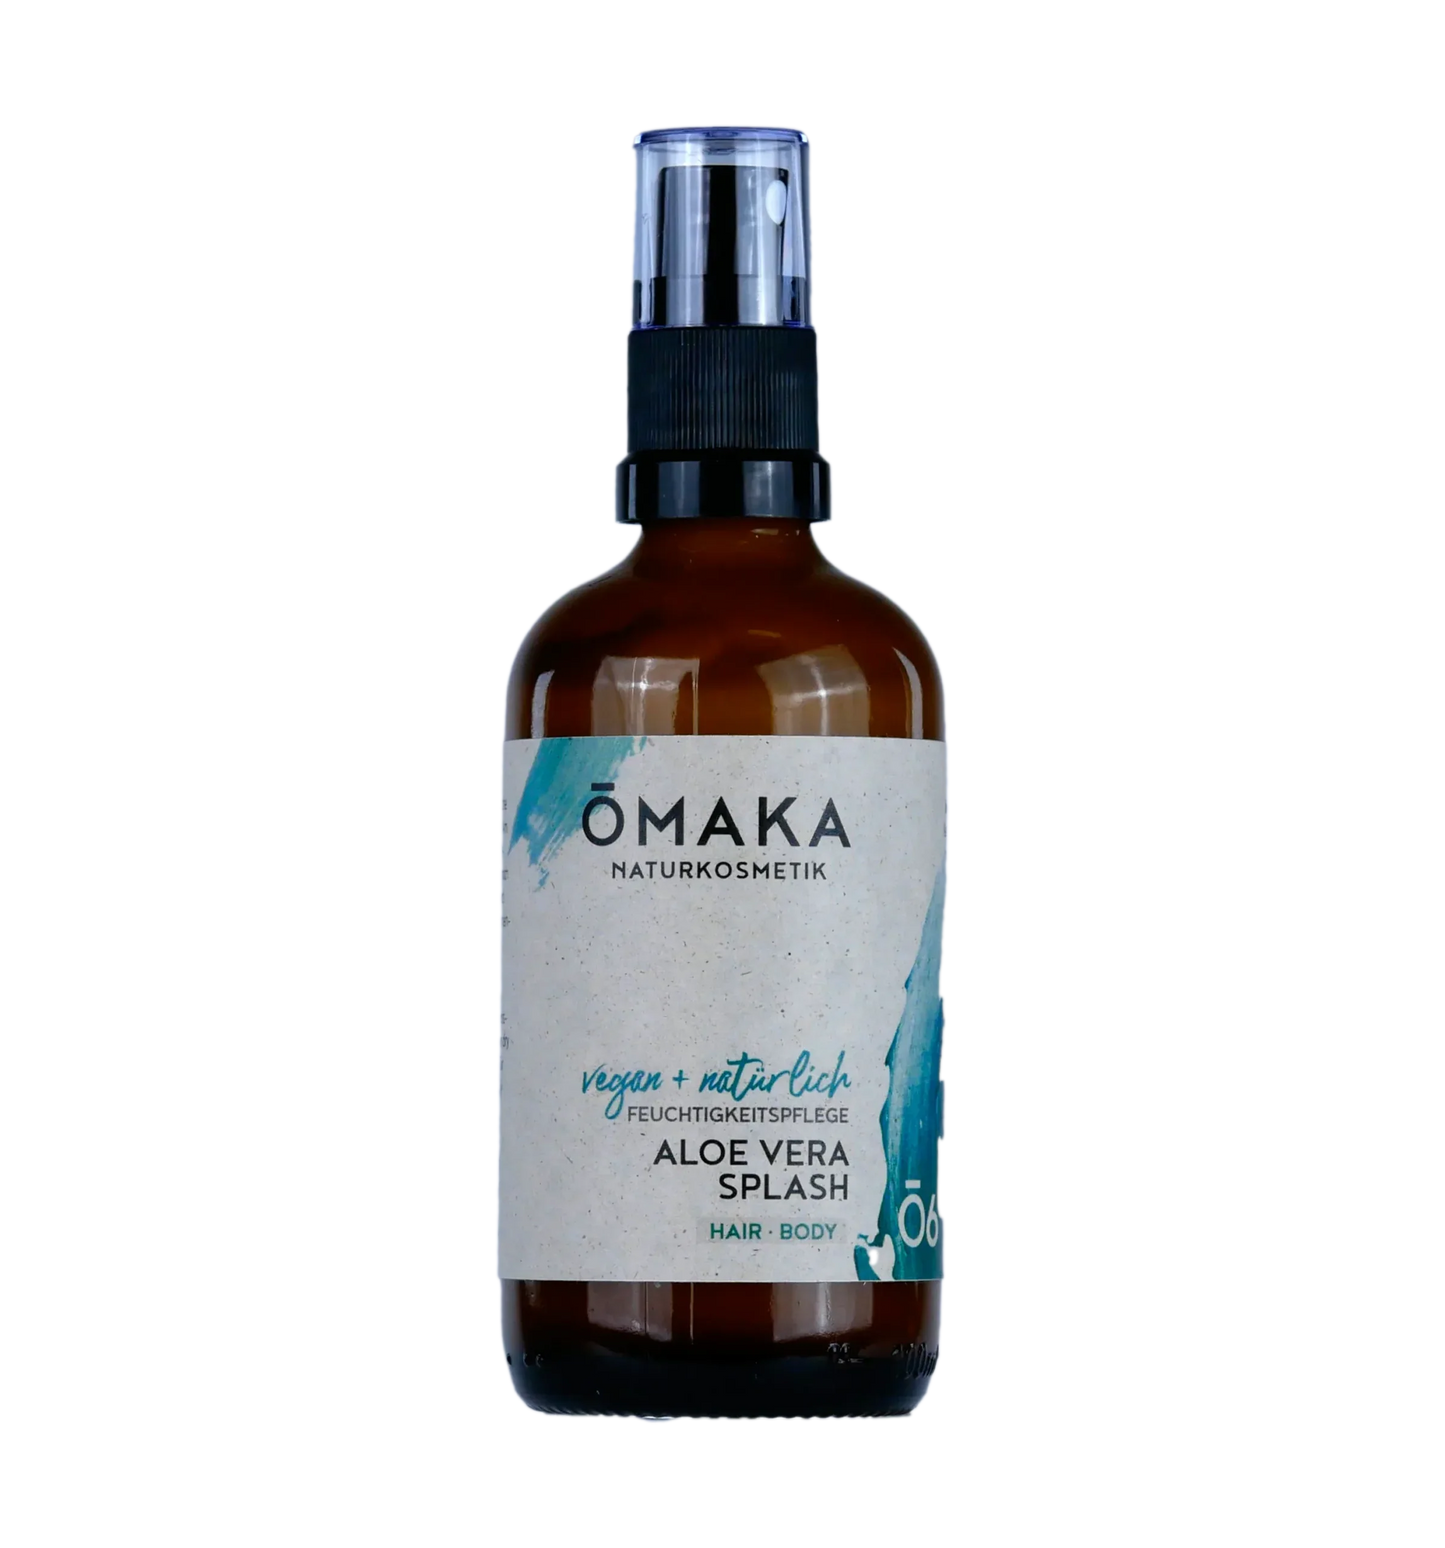 Omaka Aloe Vera Splash Feuchtigkeitspflege Hair Body